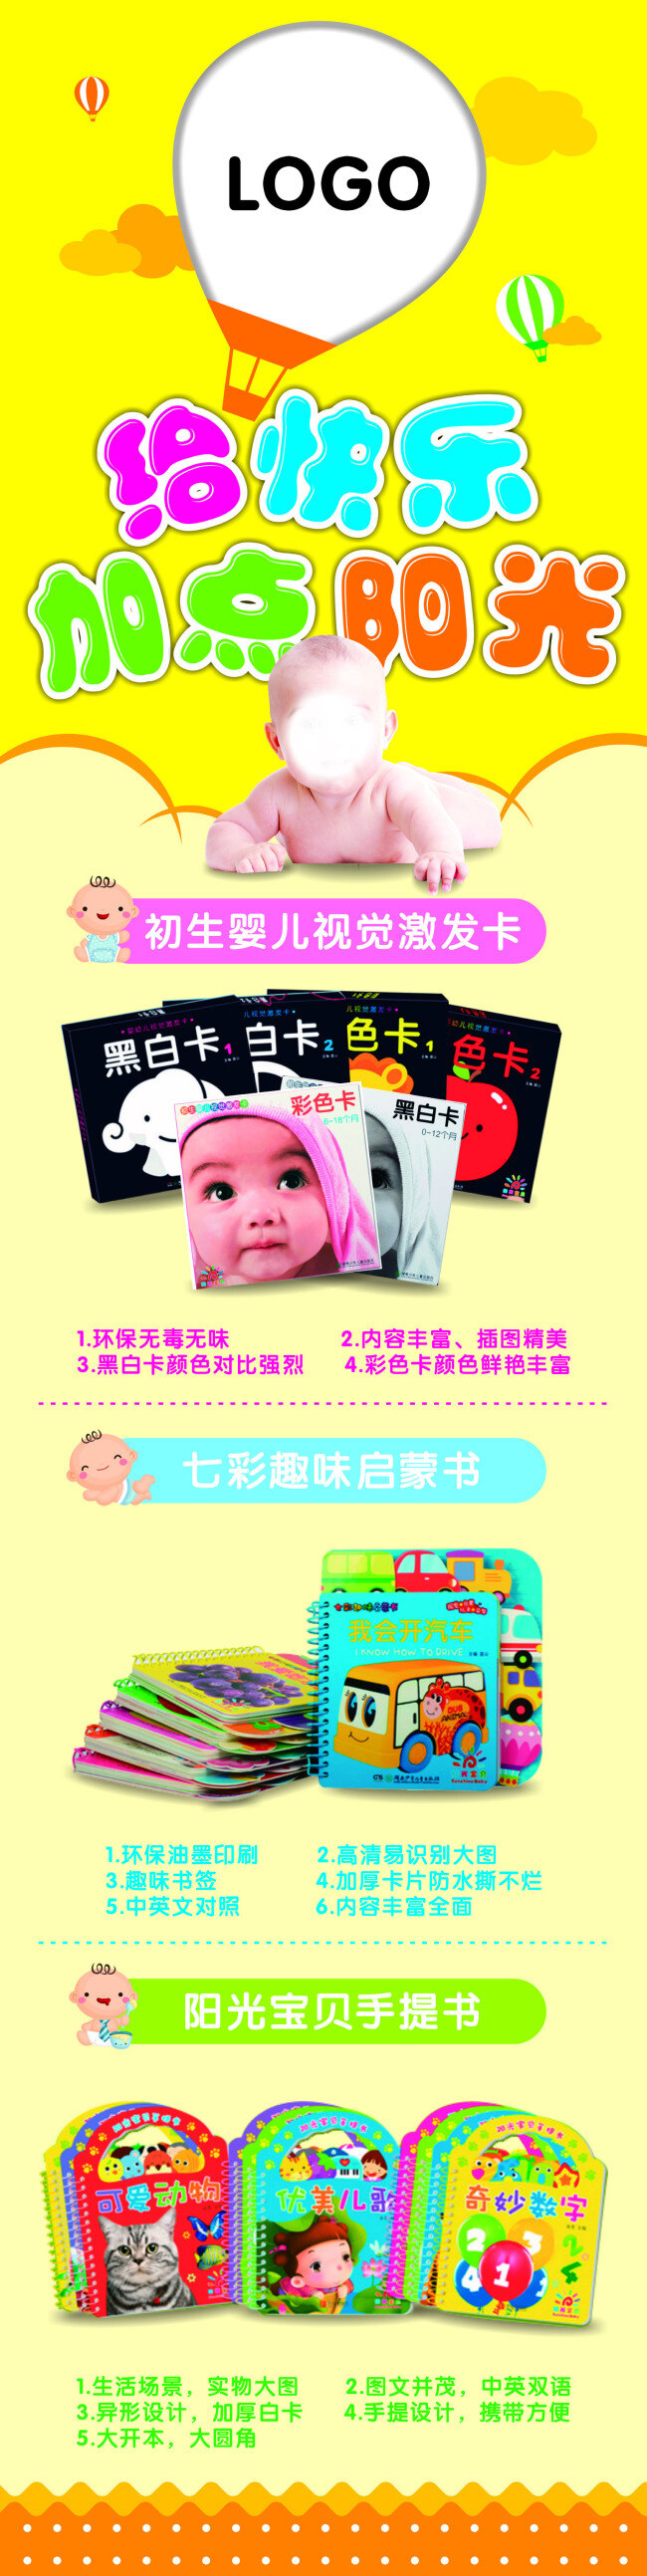 初生 婴儿 视觉 激发 卡 海报 初生婴儿 快乐 加点 阳光 宝宝 婴儿图书 书籍